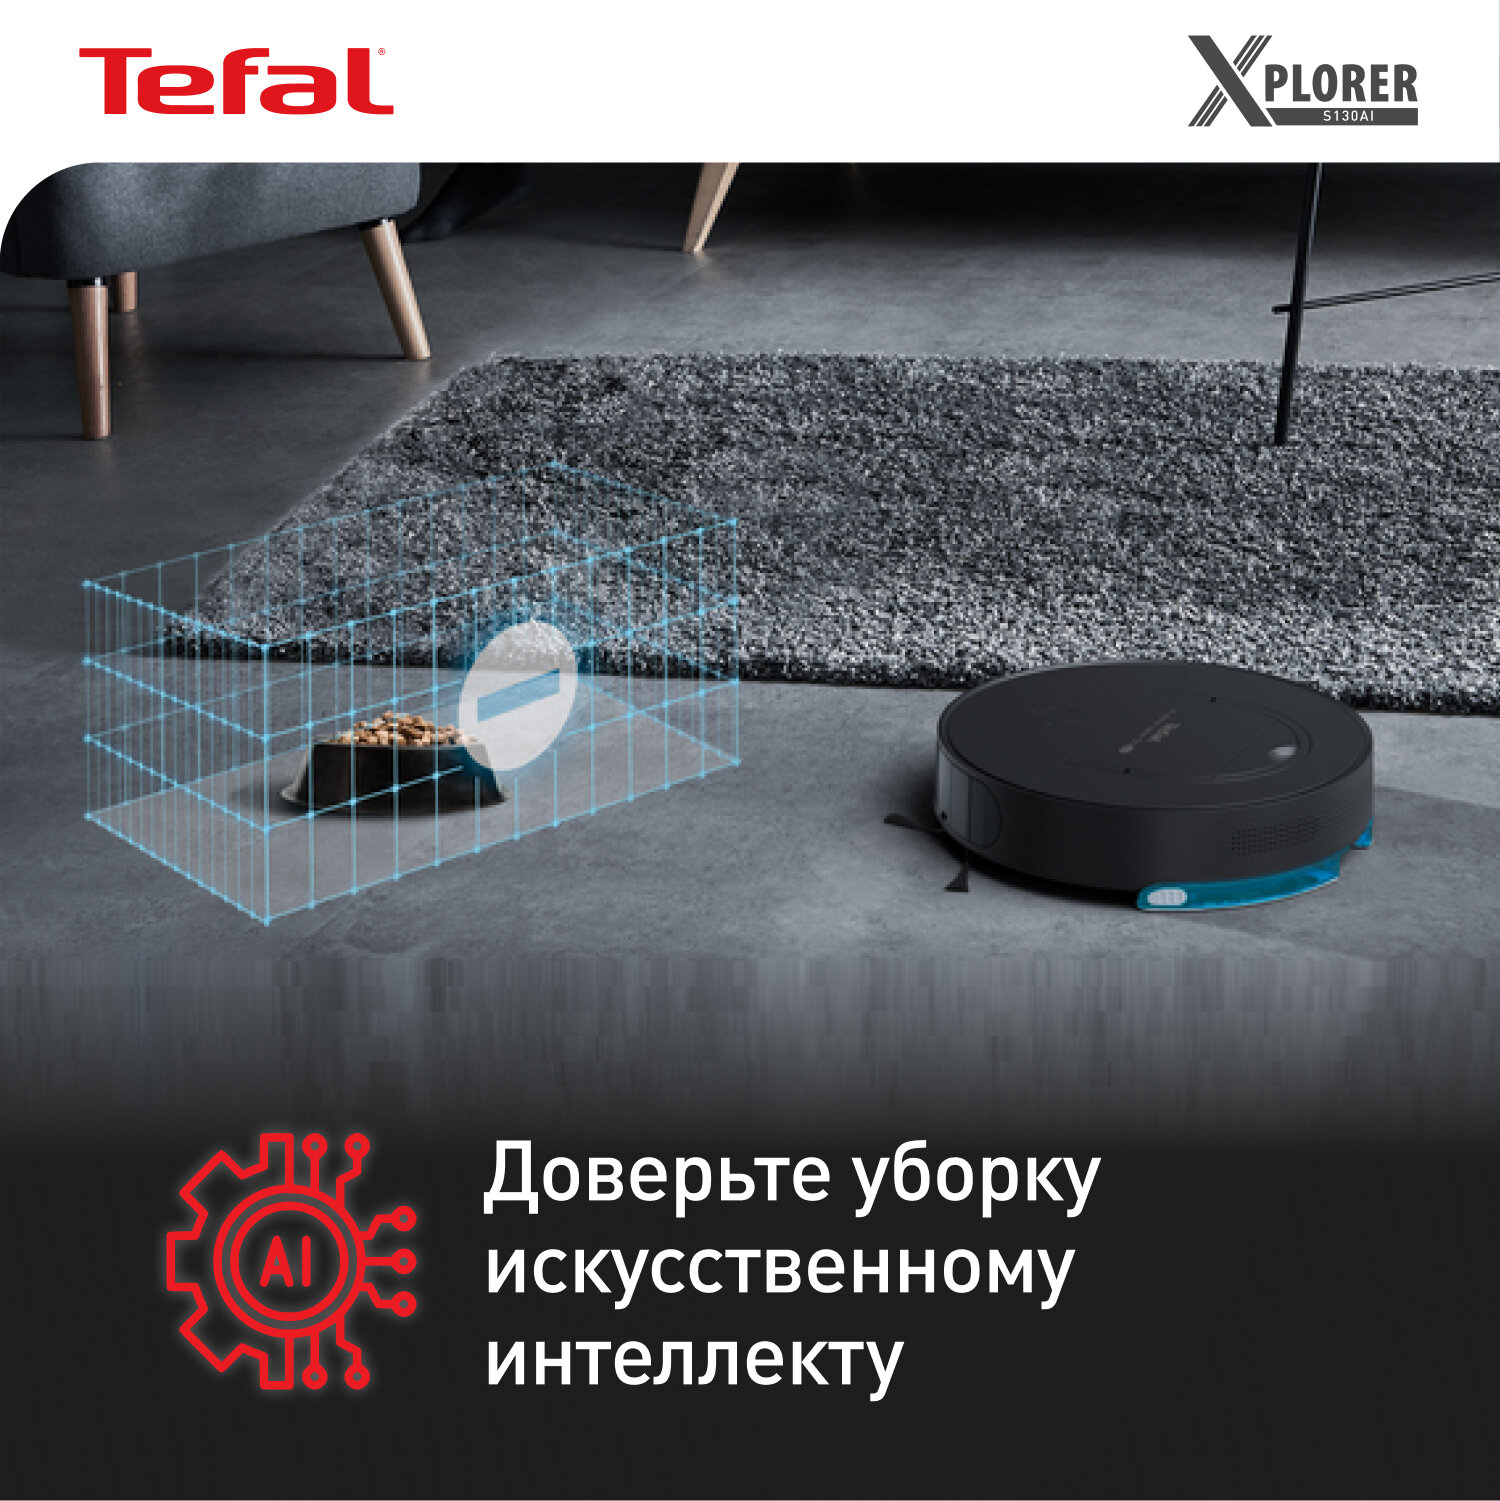 Робот пылесос Tefal X-Plorer Serie 130AI Animal & Allergy RG9075WH черный